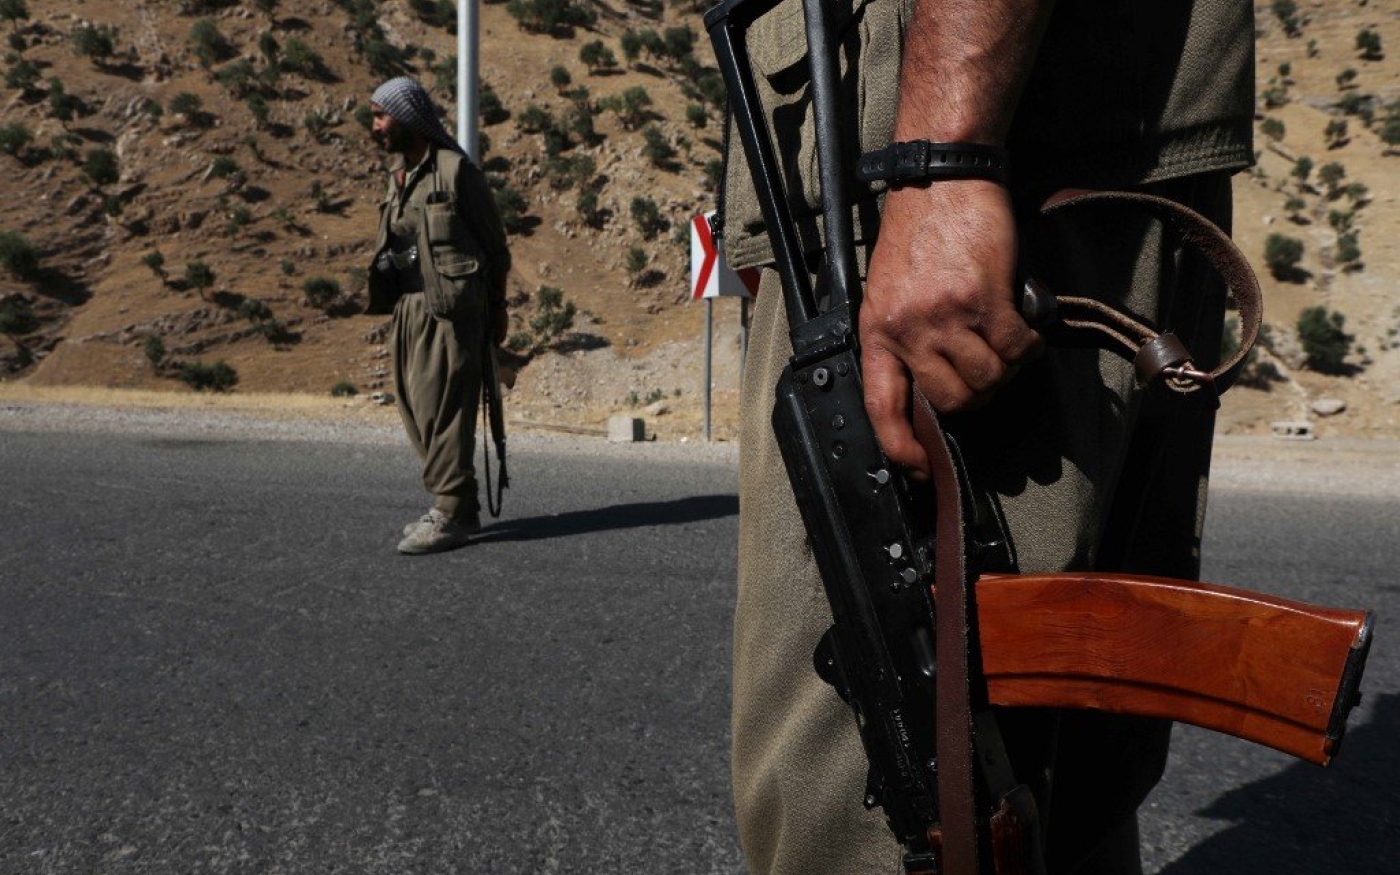 Un membre du Parti des travailleurs du Kurdistan porte une arme automatique sur une route des monts Qandil, siège du PKK dans le nord de l’Irak, le 22 juin 2018 (AFP)